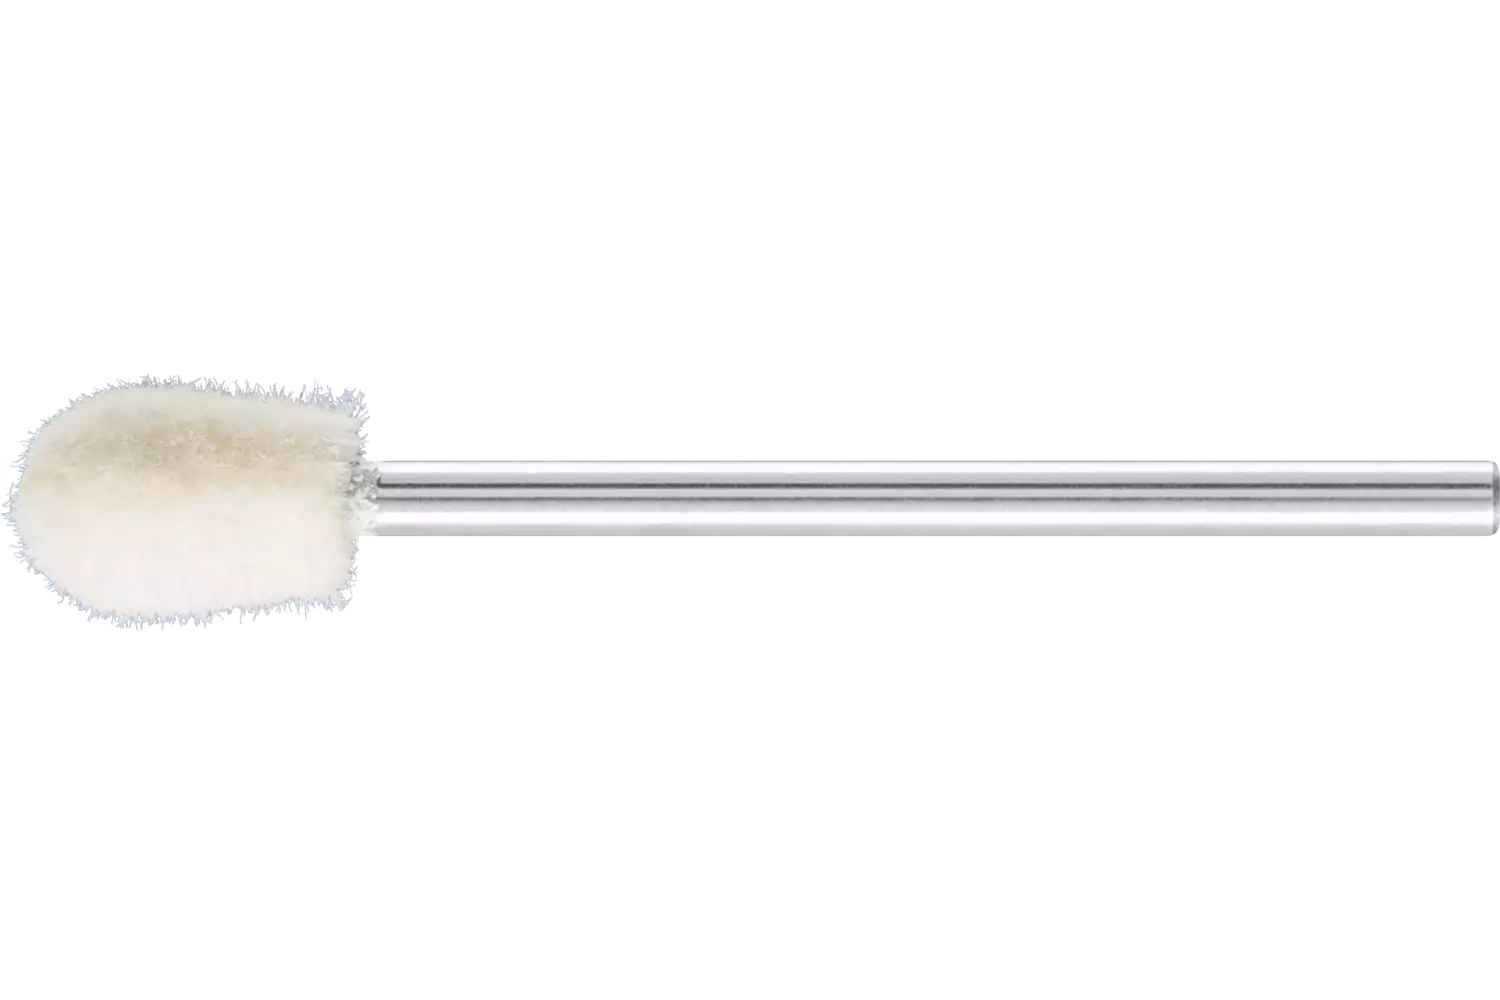 Feltri con gambo per lucidare medio-duri forma a goccia Ø 6x10 mm, gambo Ø 2,35 mm 1